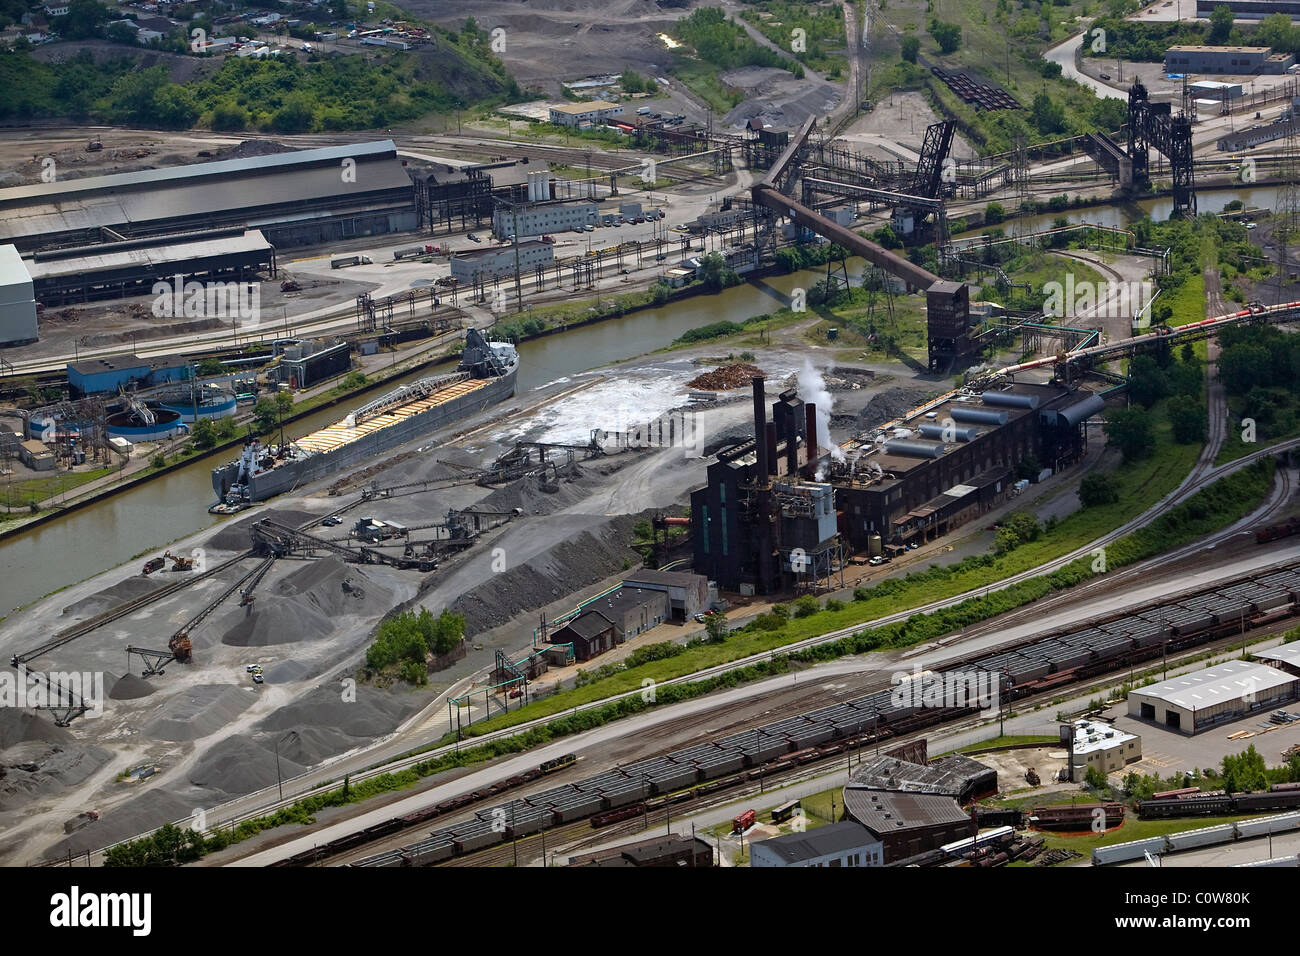 Vista aerea di acciaio di cui sopra area industriale Cuyahoga river Cleveland Ohio Foto Stock